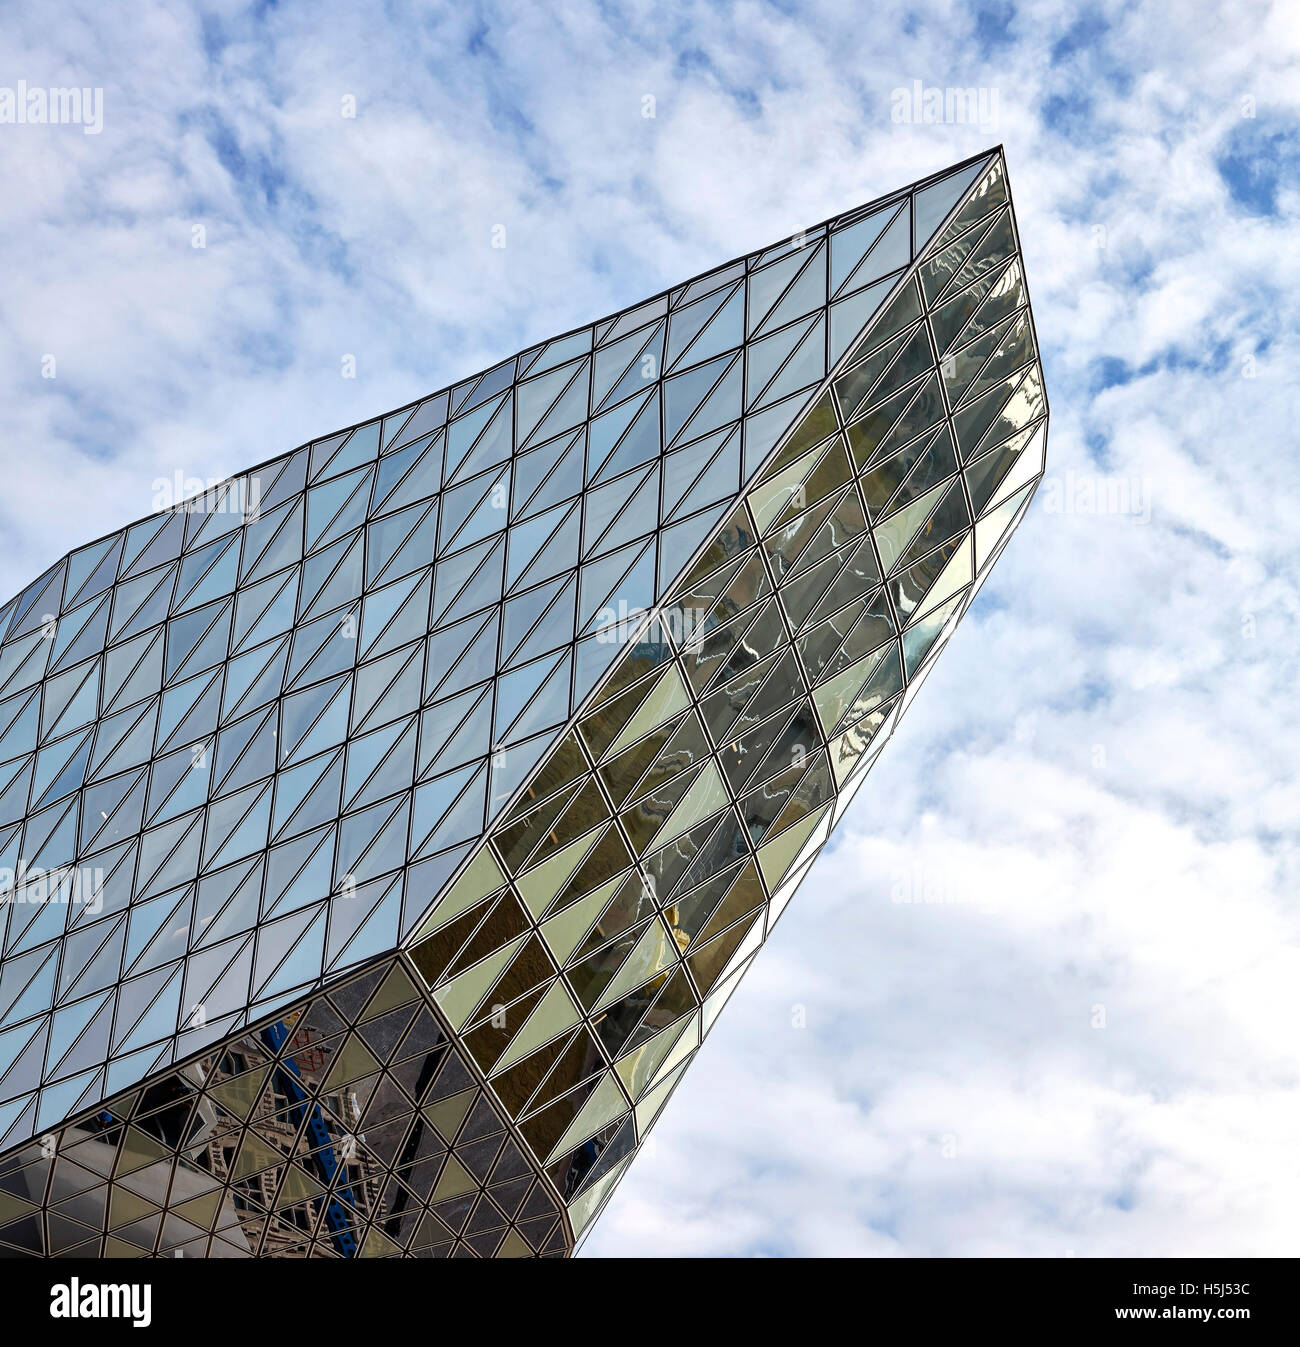 Detalle de opaco y facetas de cristal transparente. Casa del puerto de Amberes, Bélgica. Arquitecto: Zaha Hadid Architects, 2016. Foto de stock